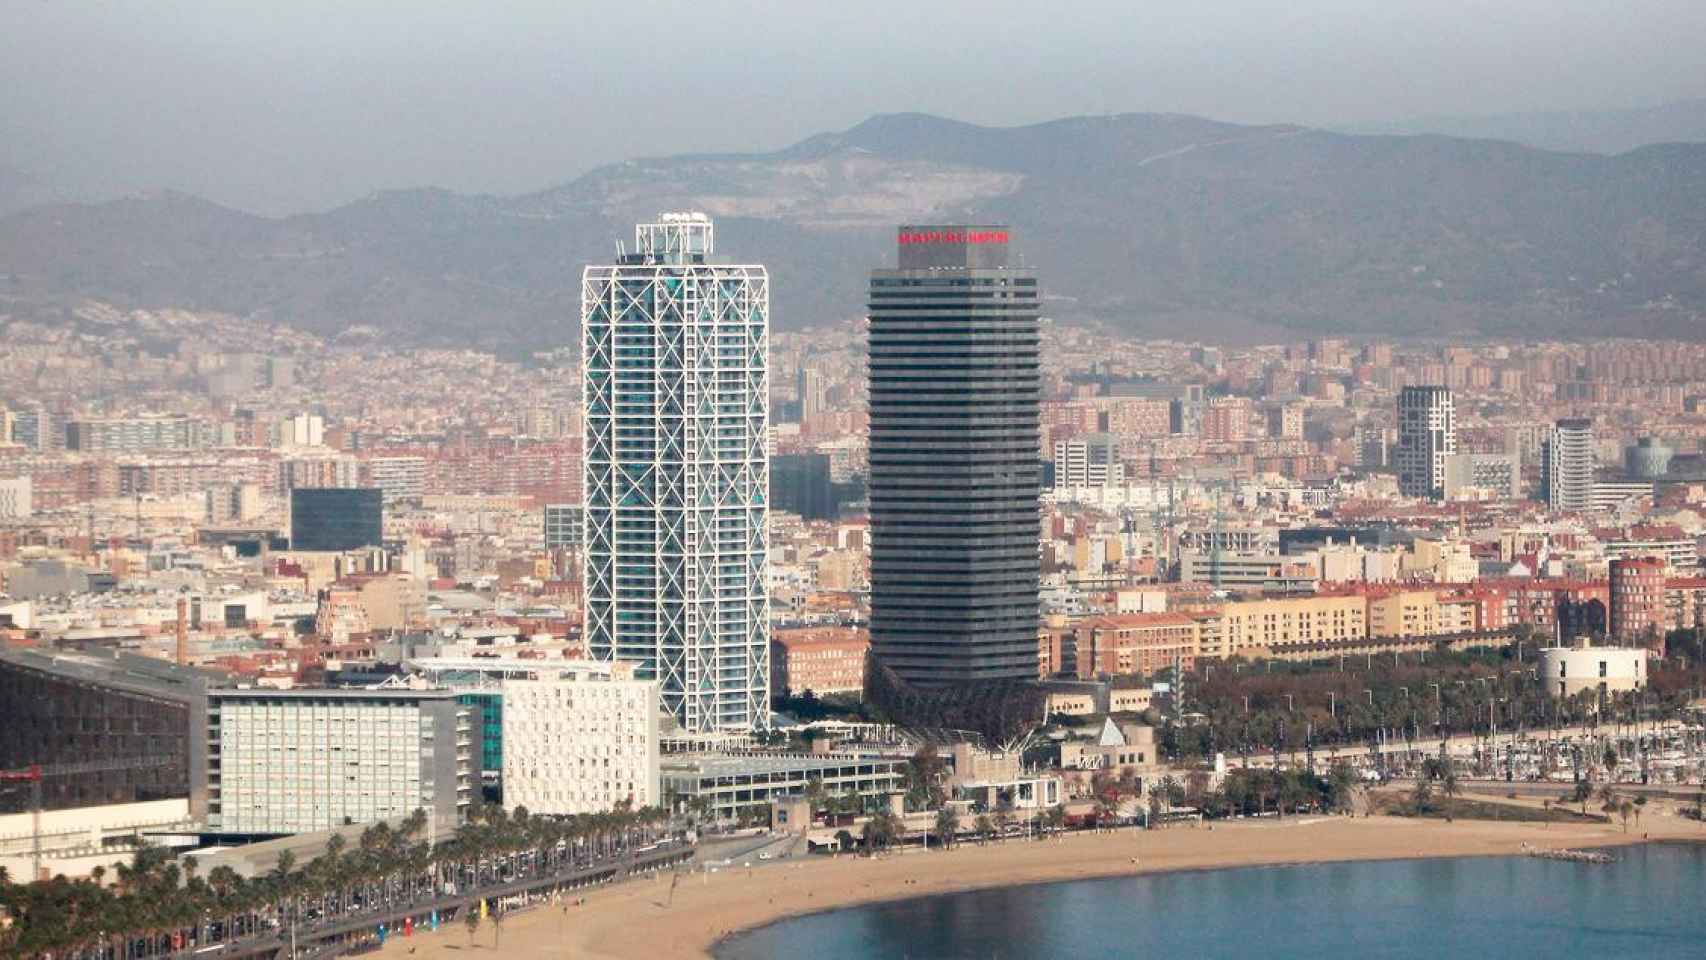 Vista del Hotel Arts (rascacielos a la izquierda de la foto), en el Frente Marítimo de Barcelona / CG